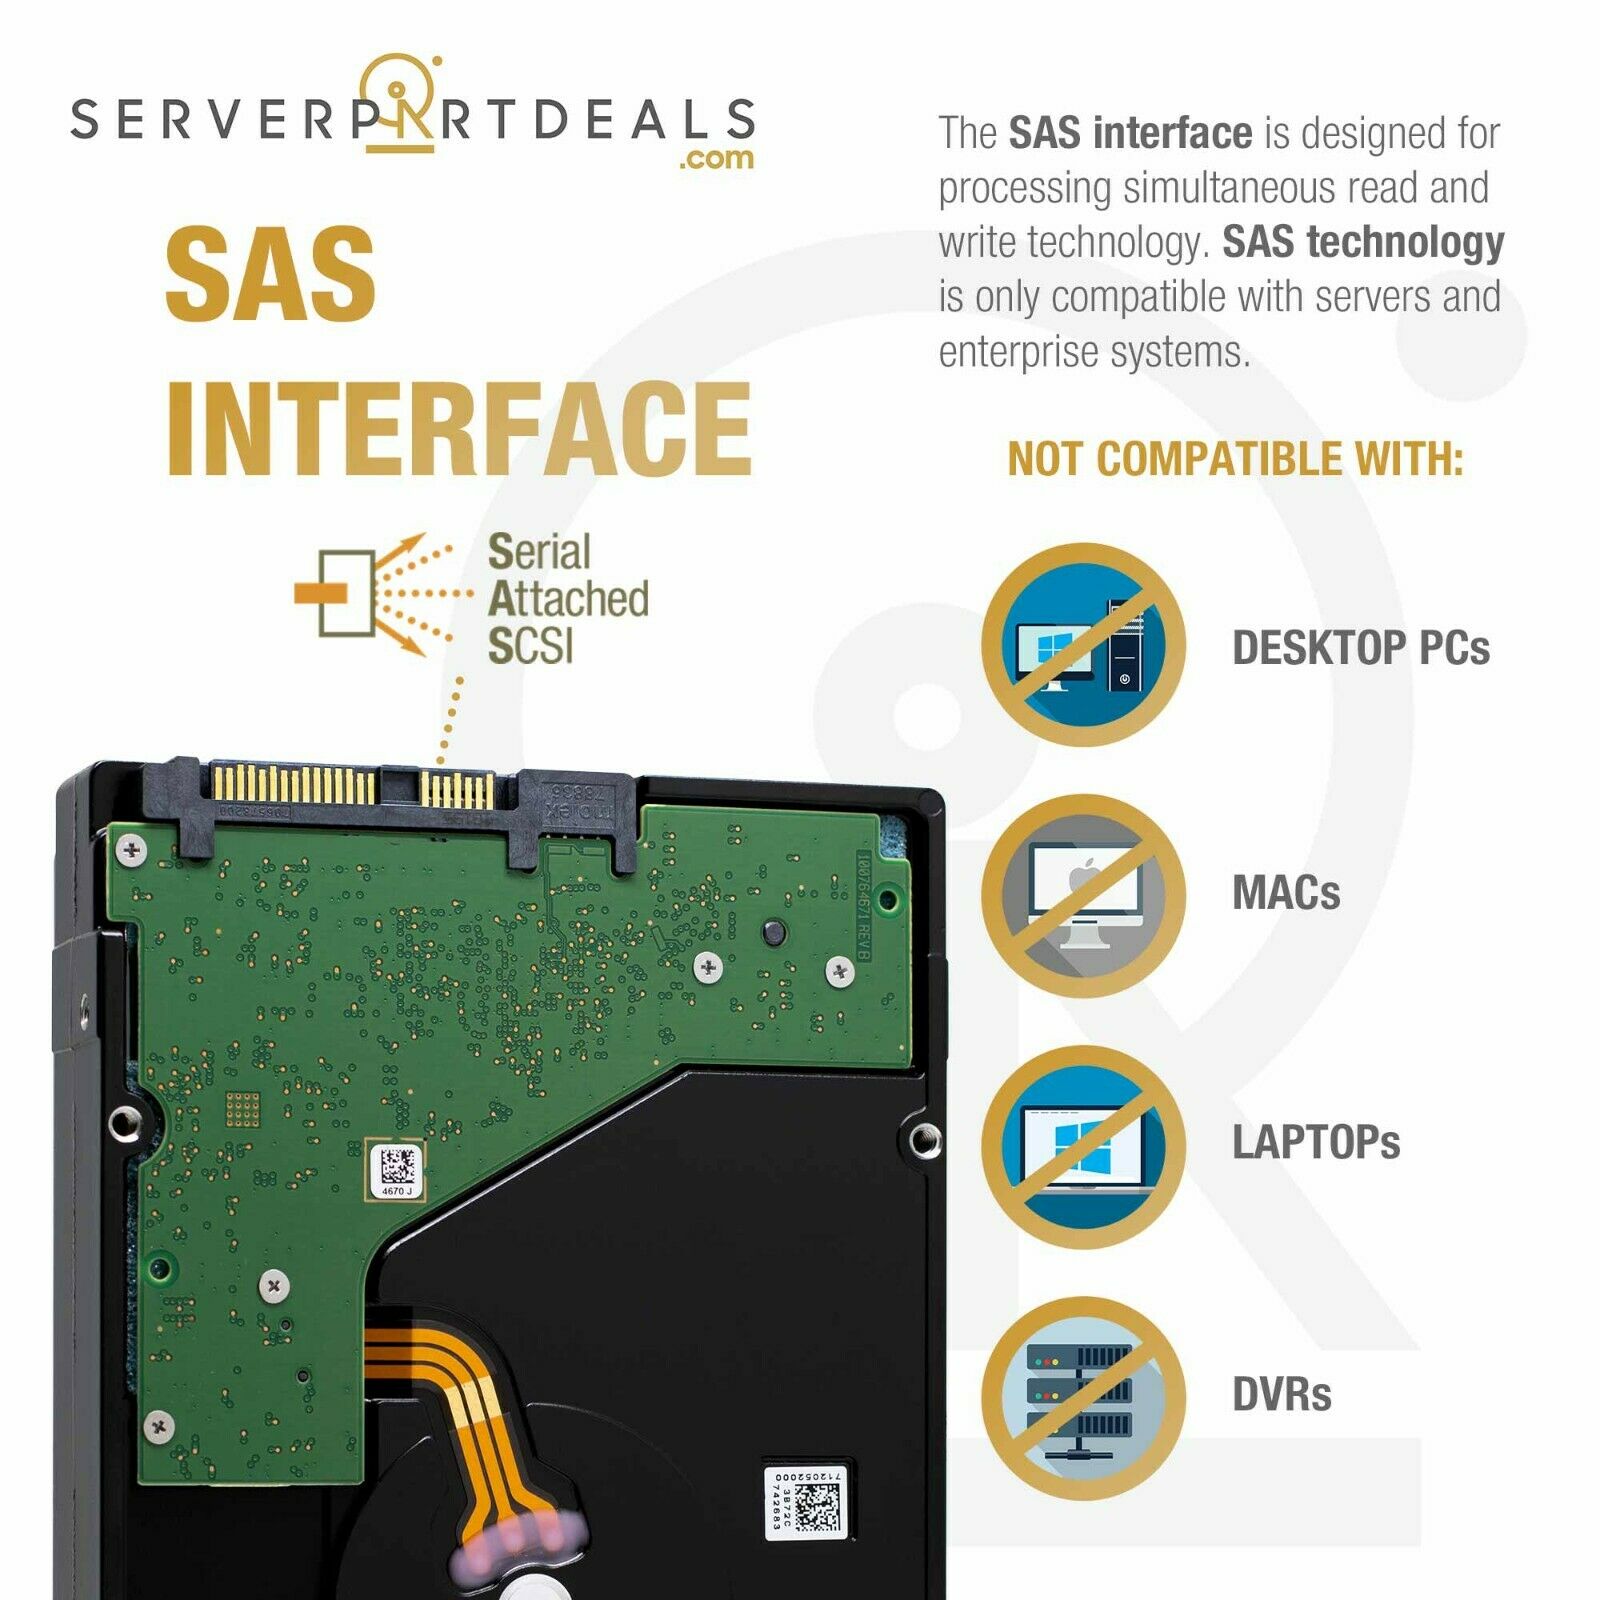 Seagate Exos X18 ST18000NM005J 18TB 7.2K RPM SAS 12Gb/s 512e SED 3.5in Hard Drive - SAS Interface